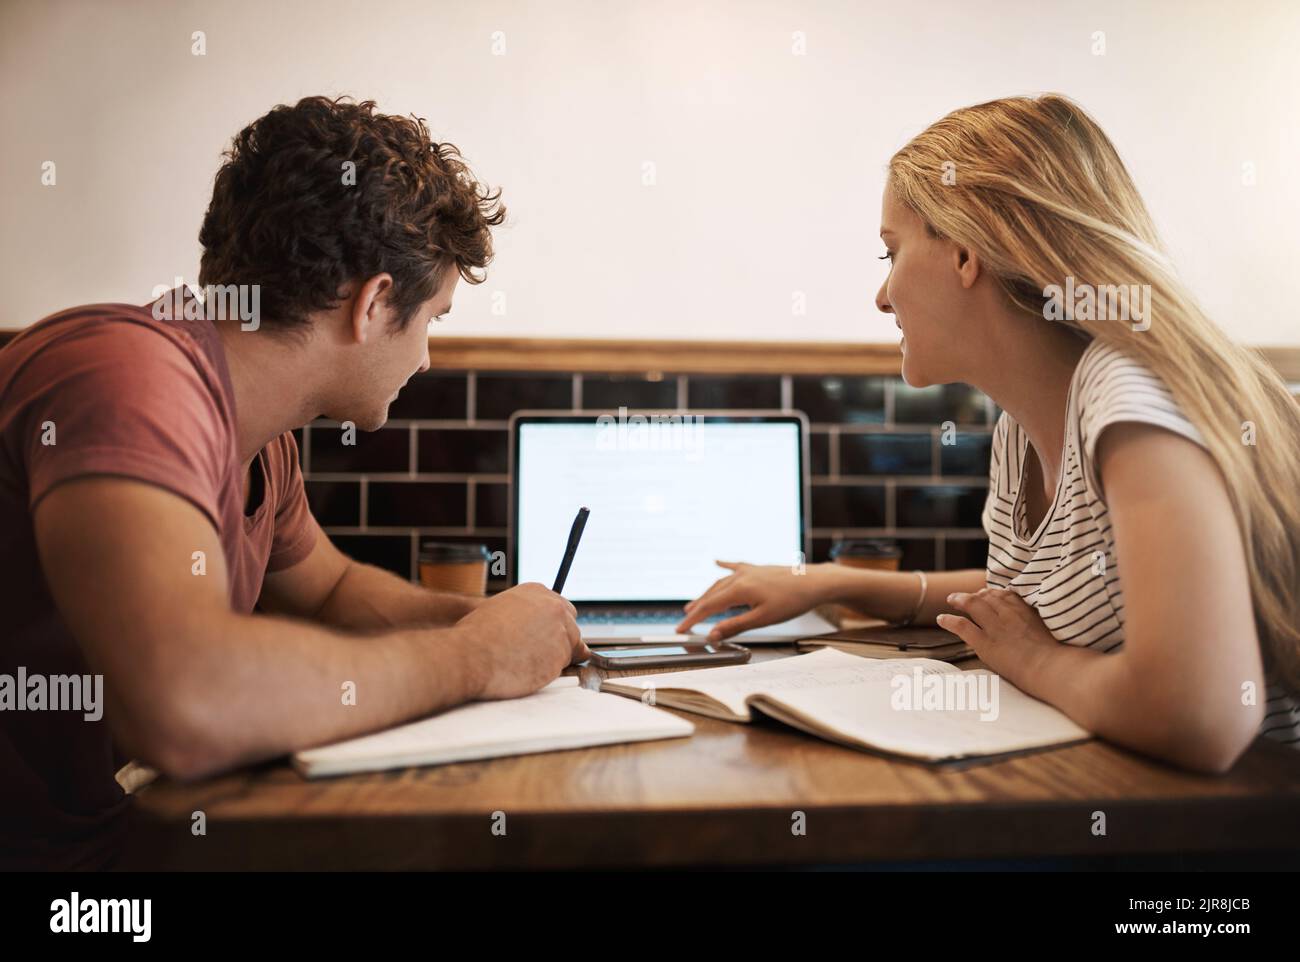 Nutzung von Online-Lernressourcen. Zwei glückliche junge Studenten, die eine Studiensitzung in ihrem Lieblingscafé abhalten. Stockfoto